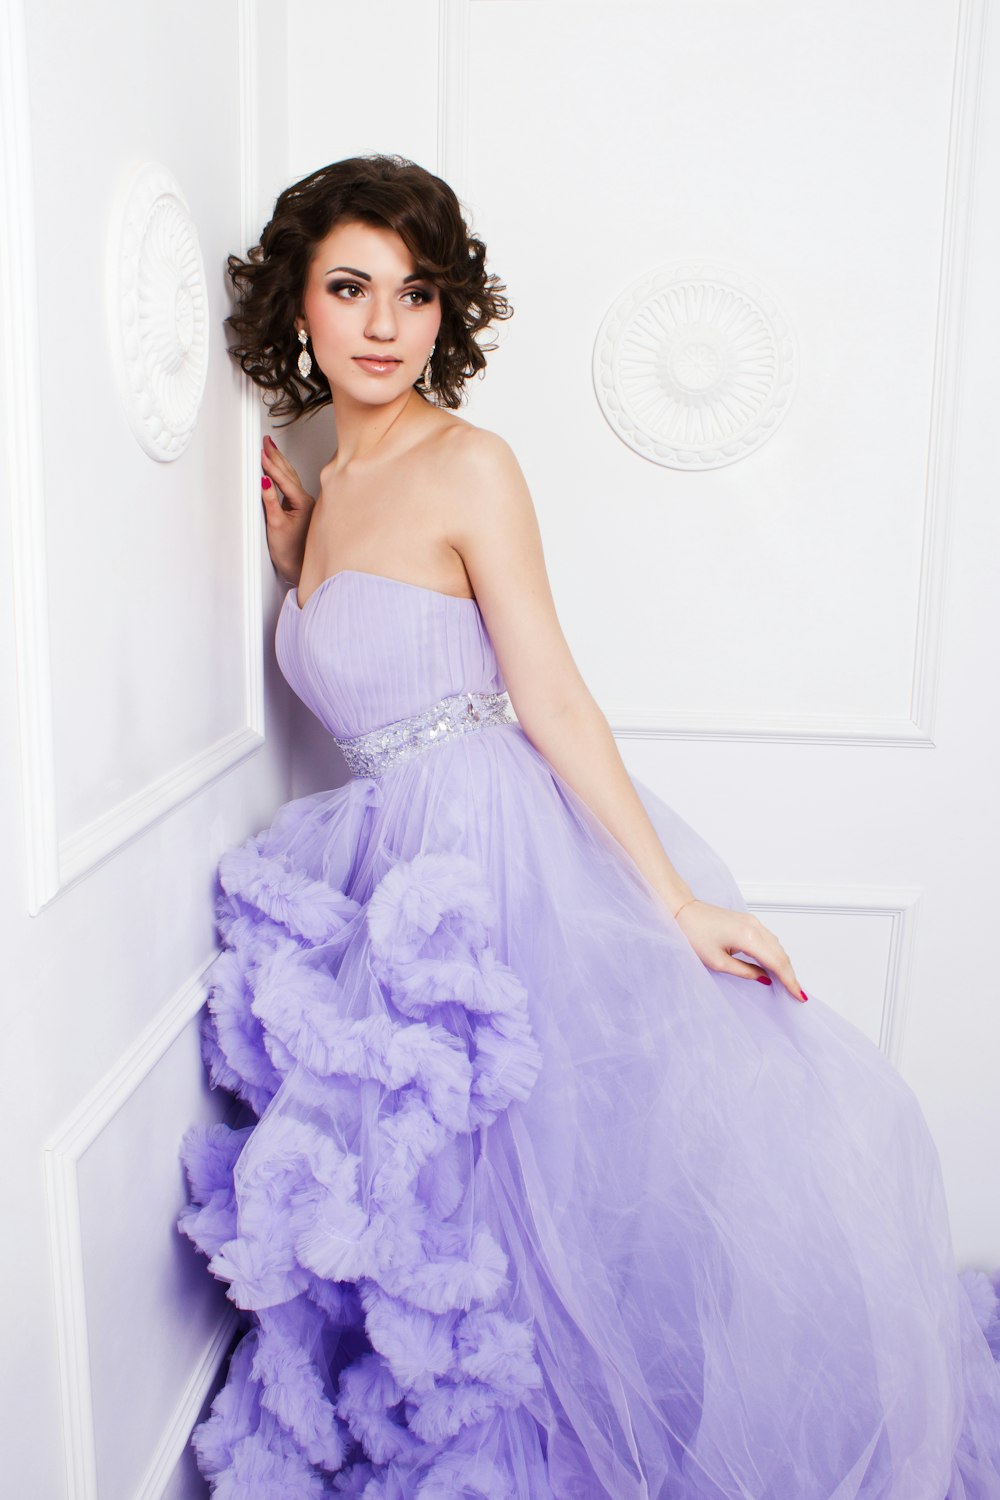 壁にもたれかかる紫色のストラップレスウェディングドレスを着た女性